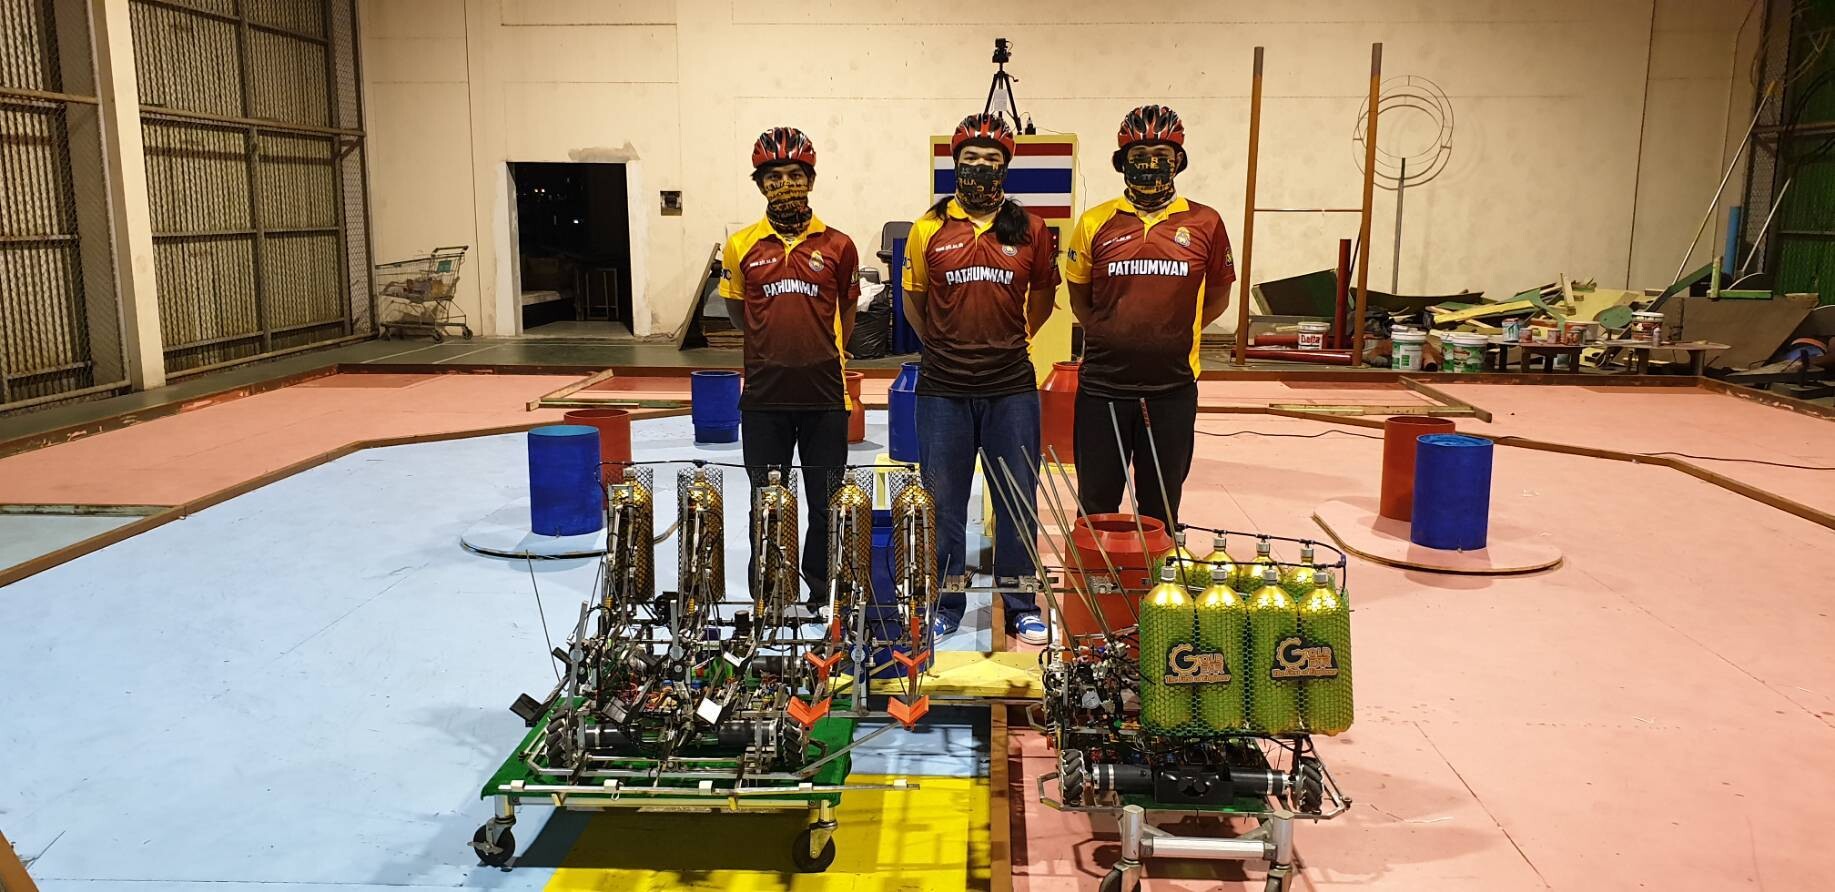 มีข่าวดีมาบอก ทีม GOLDGEAR จากสถาบันเทคโนโลยีปทุมวัน ได้รับรางวัลชนะเลิศการแข่งขันหุ่นยนต์ ส.ส.ท. ชิงแชมป์ประเทศไทย 2564